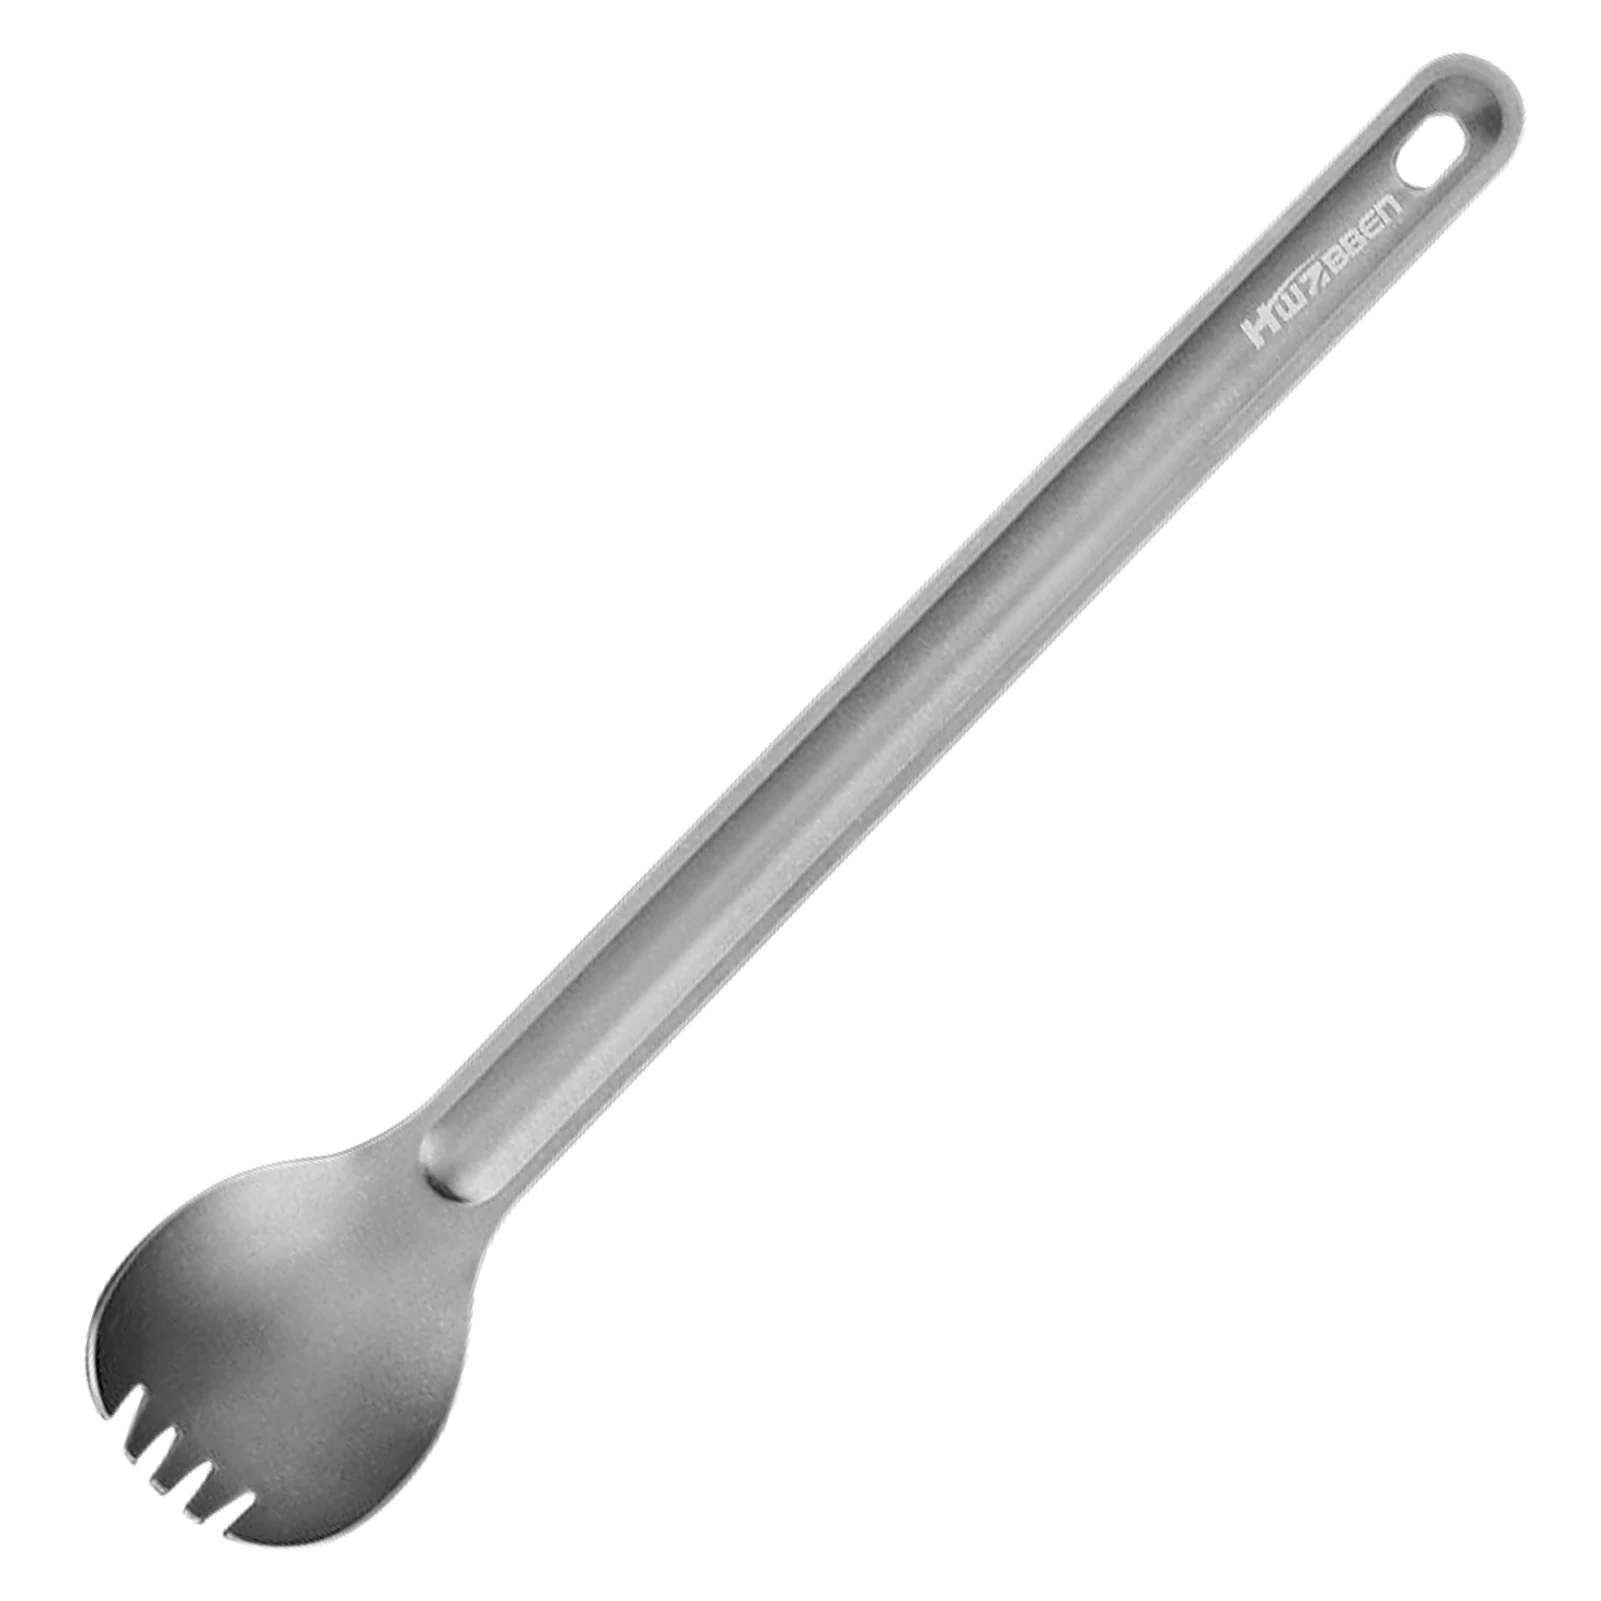 Outdoor Titanium Spork Long Handle Spoon Fork Portable Spork Cutlery-GS 